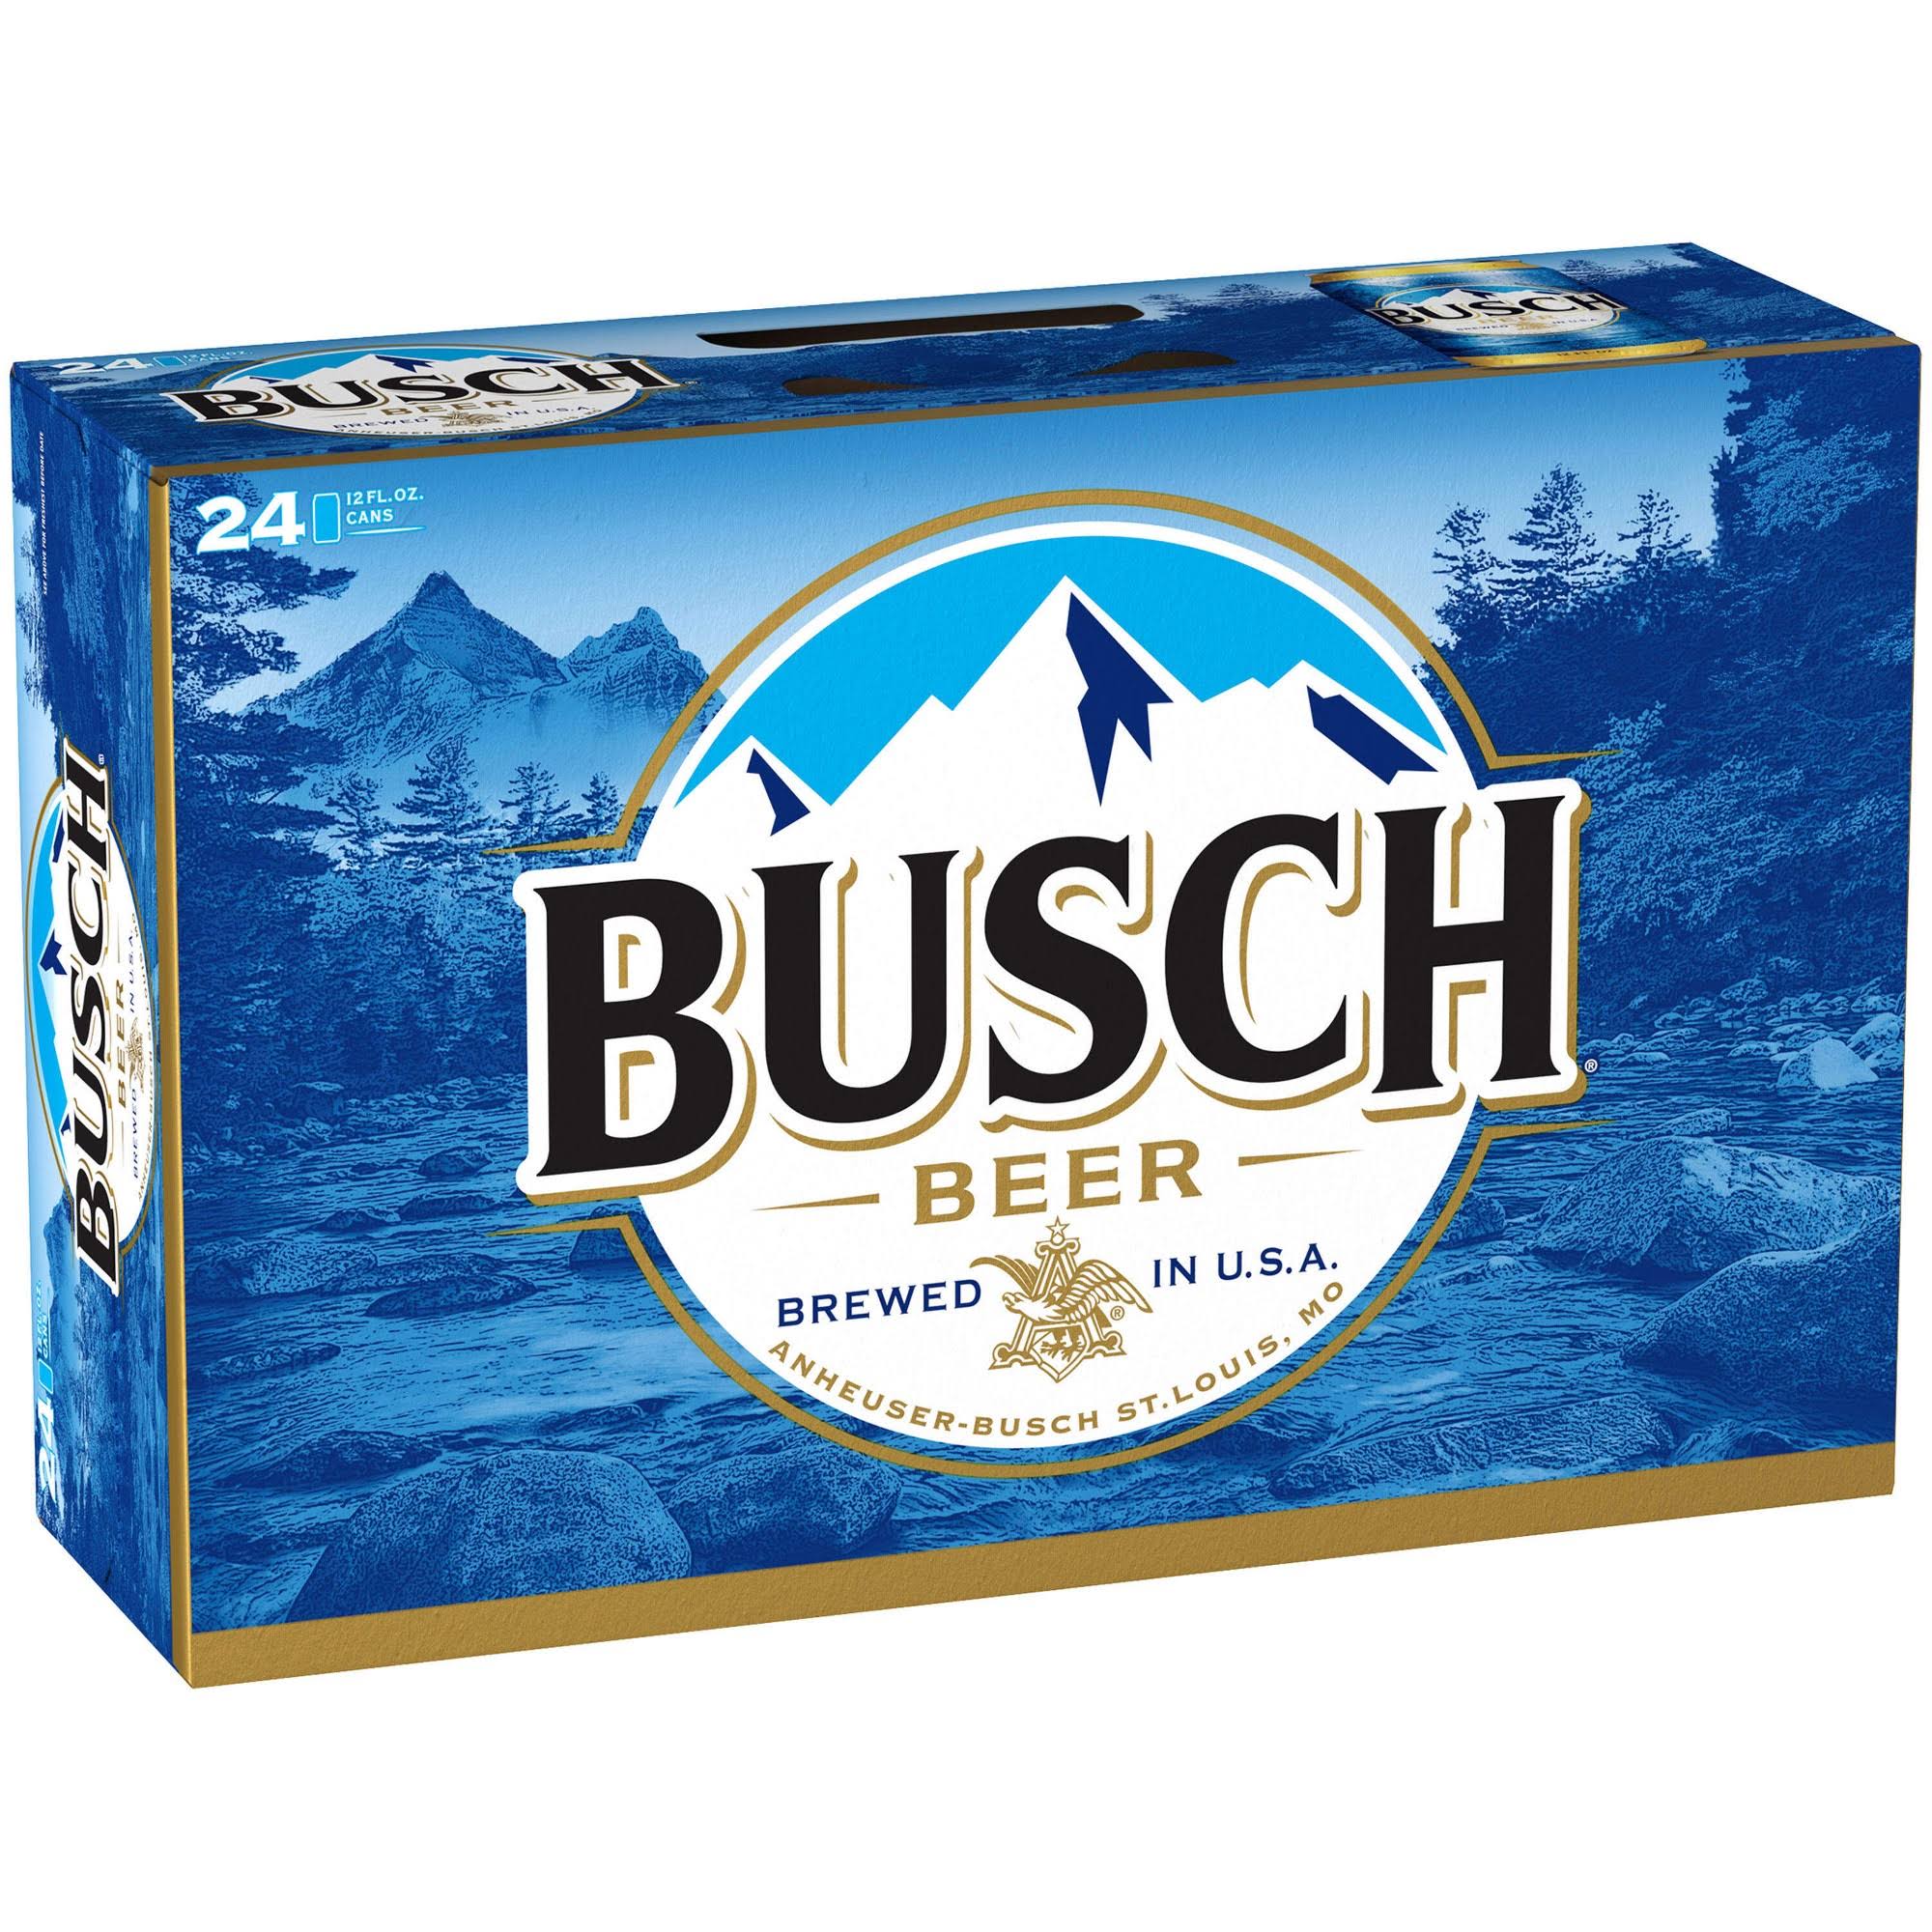 Busch Beer - 12oz, 24 Pack